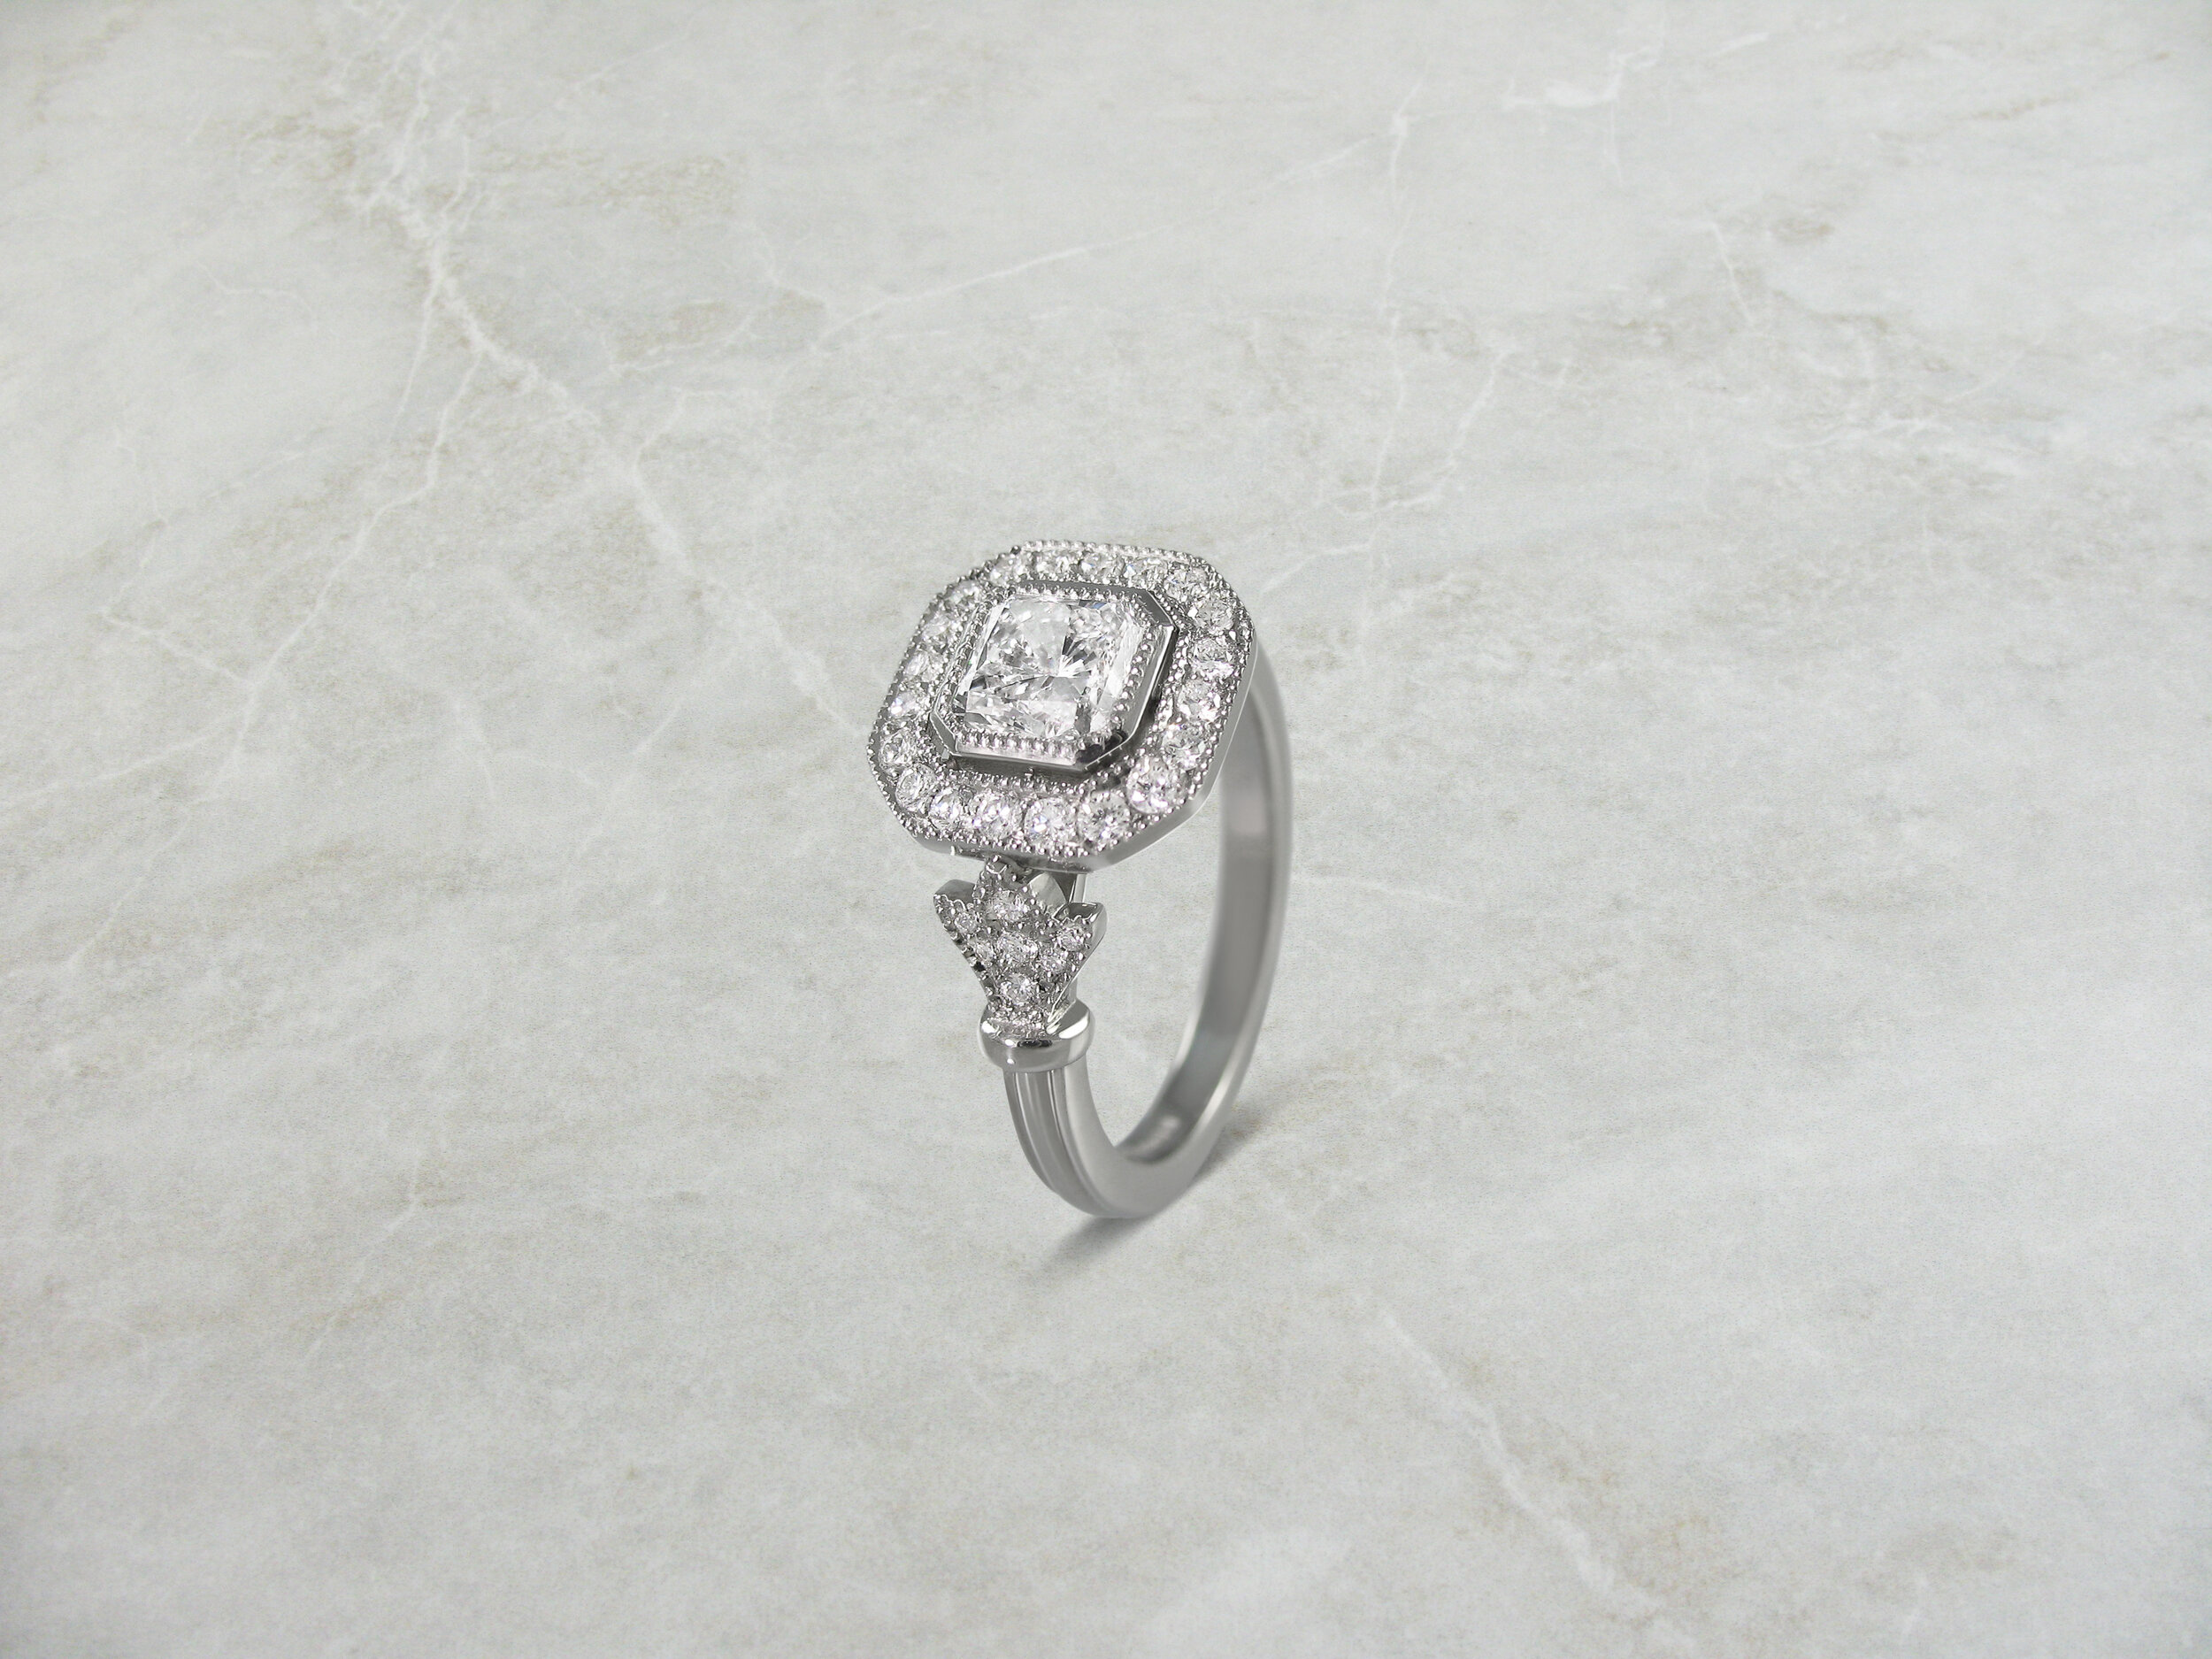 Vintage inspired asscher cut diamond ring